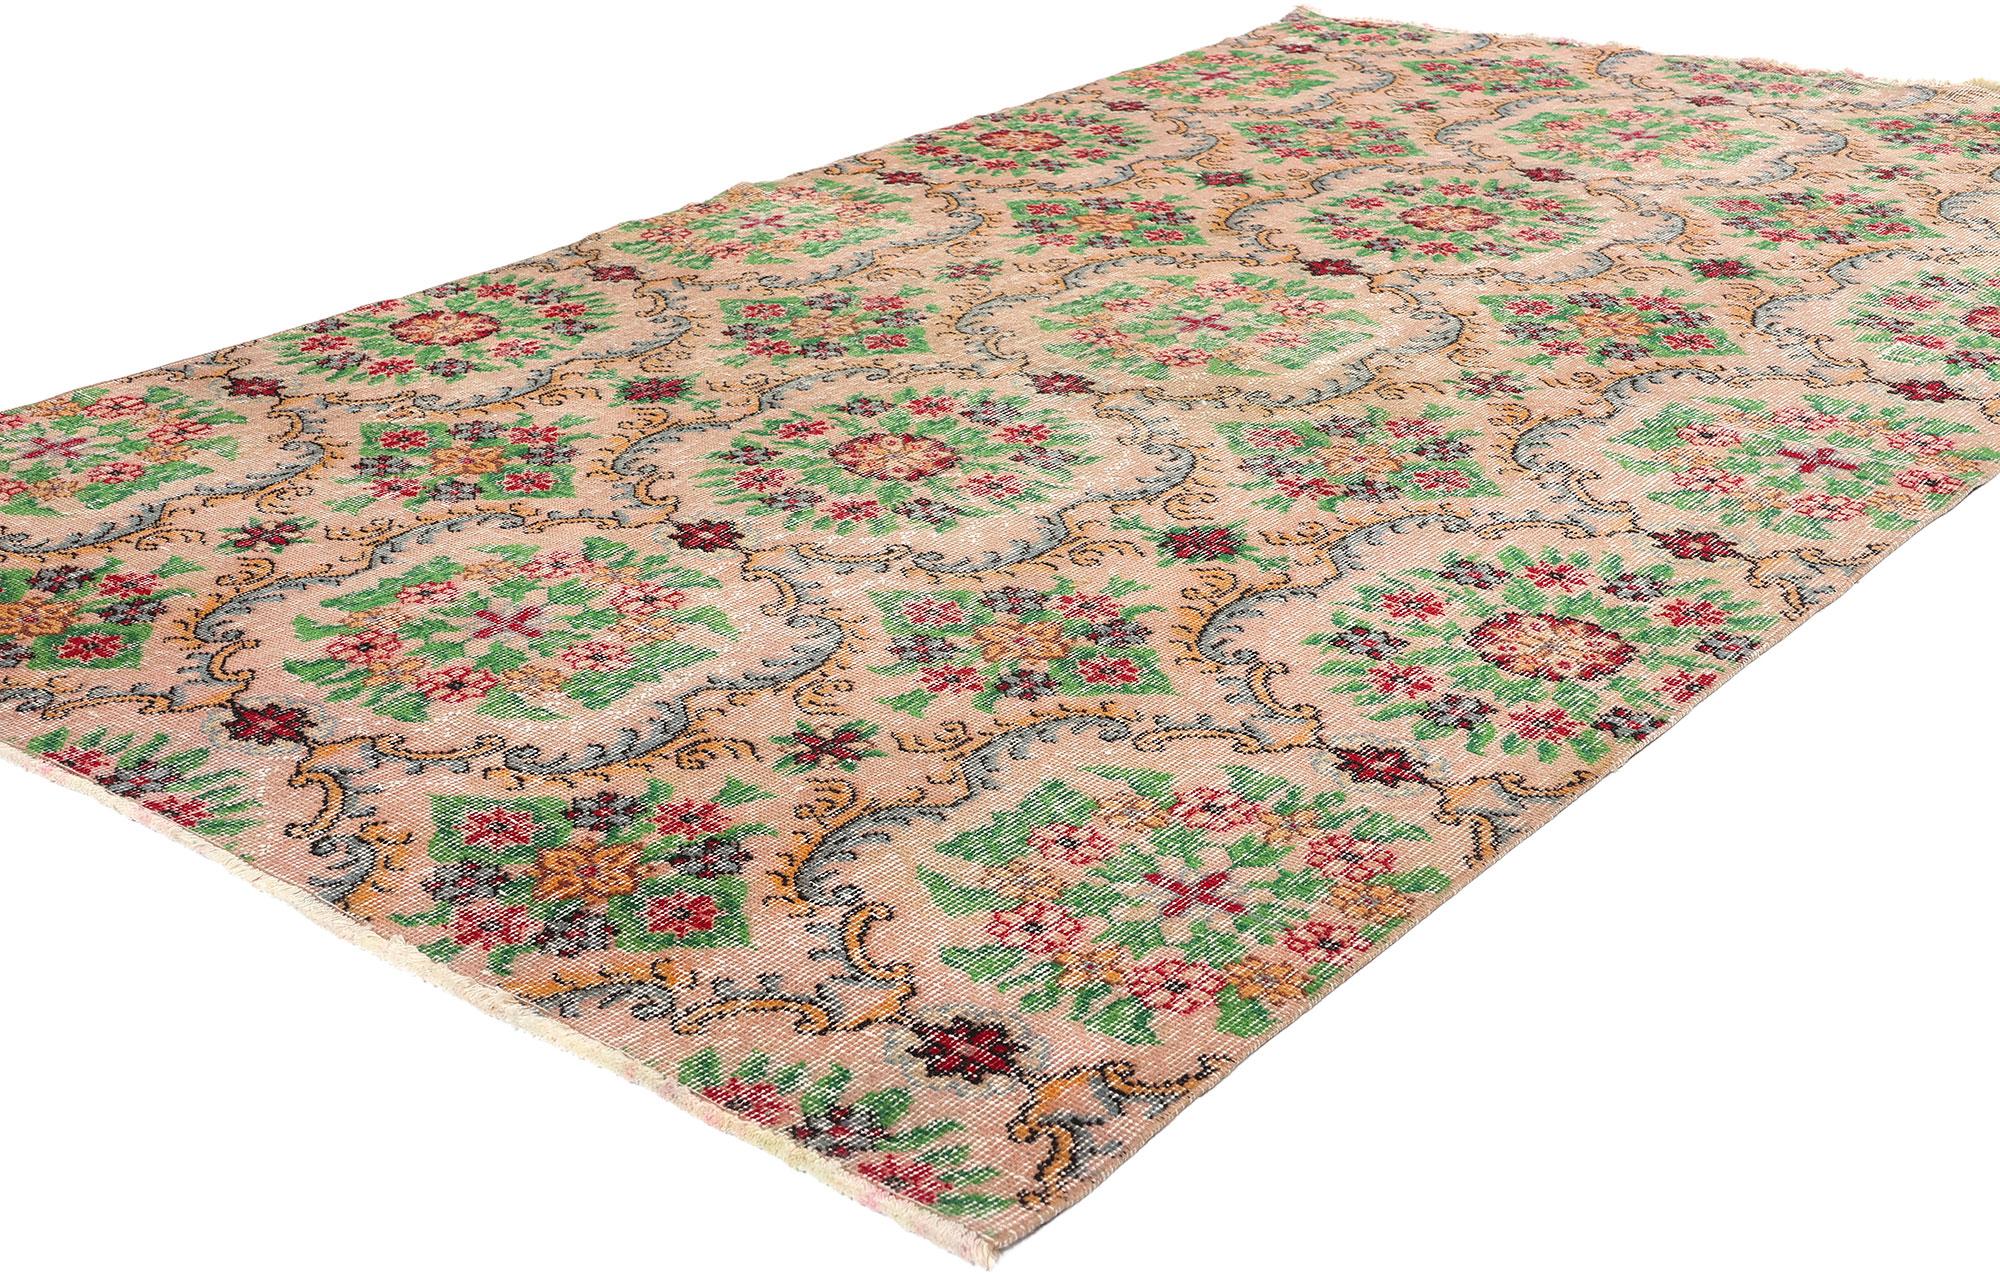 52002 Tapis Vintage Distressed Turkish Sivas, 05'00 x 06'07. Originaires de Sivas, en Anatolie centrale (Turquie), les tapis turcs Sivas sont profondément ancrés dans la tradition et l'authenticité. Ces tapis sont soumis à des processus de